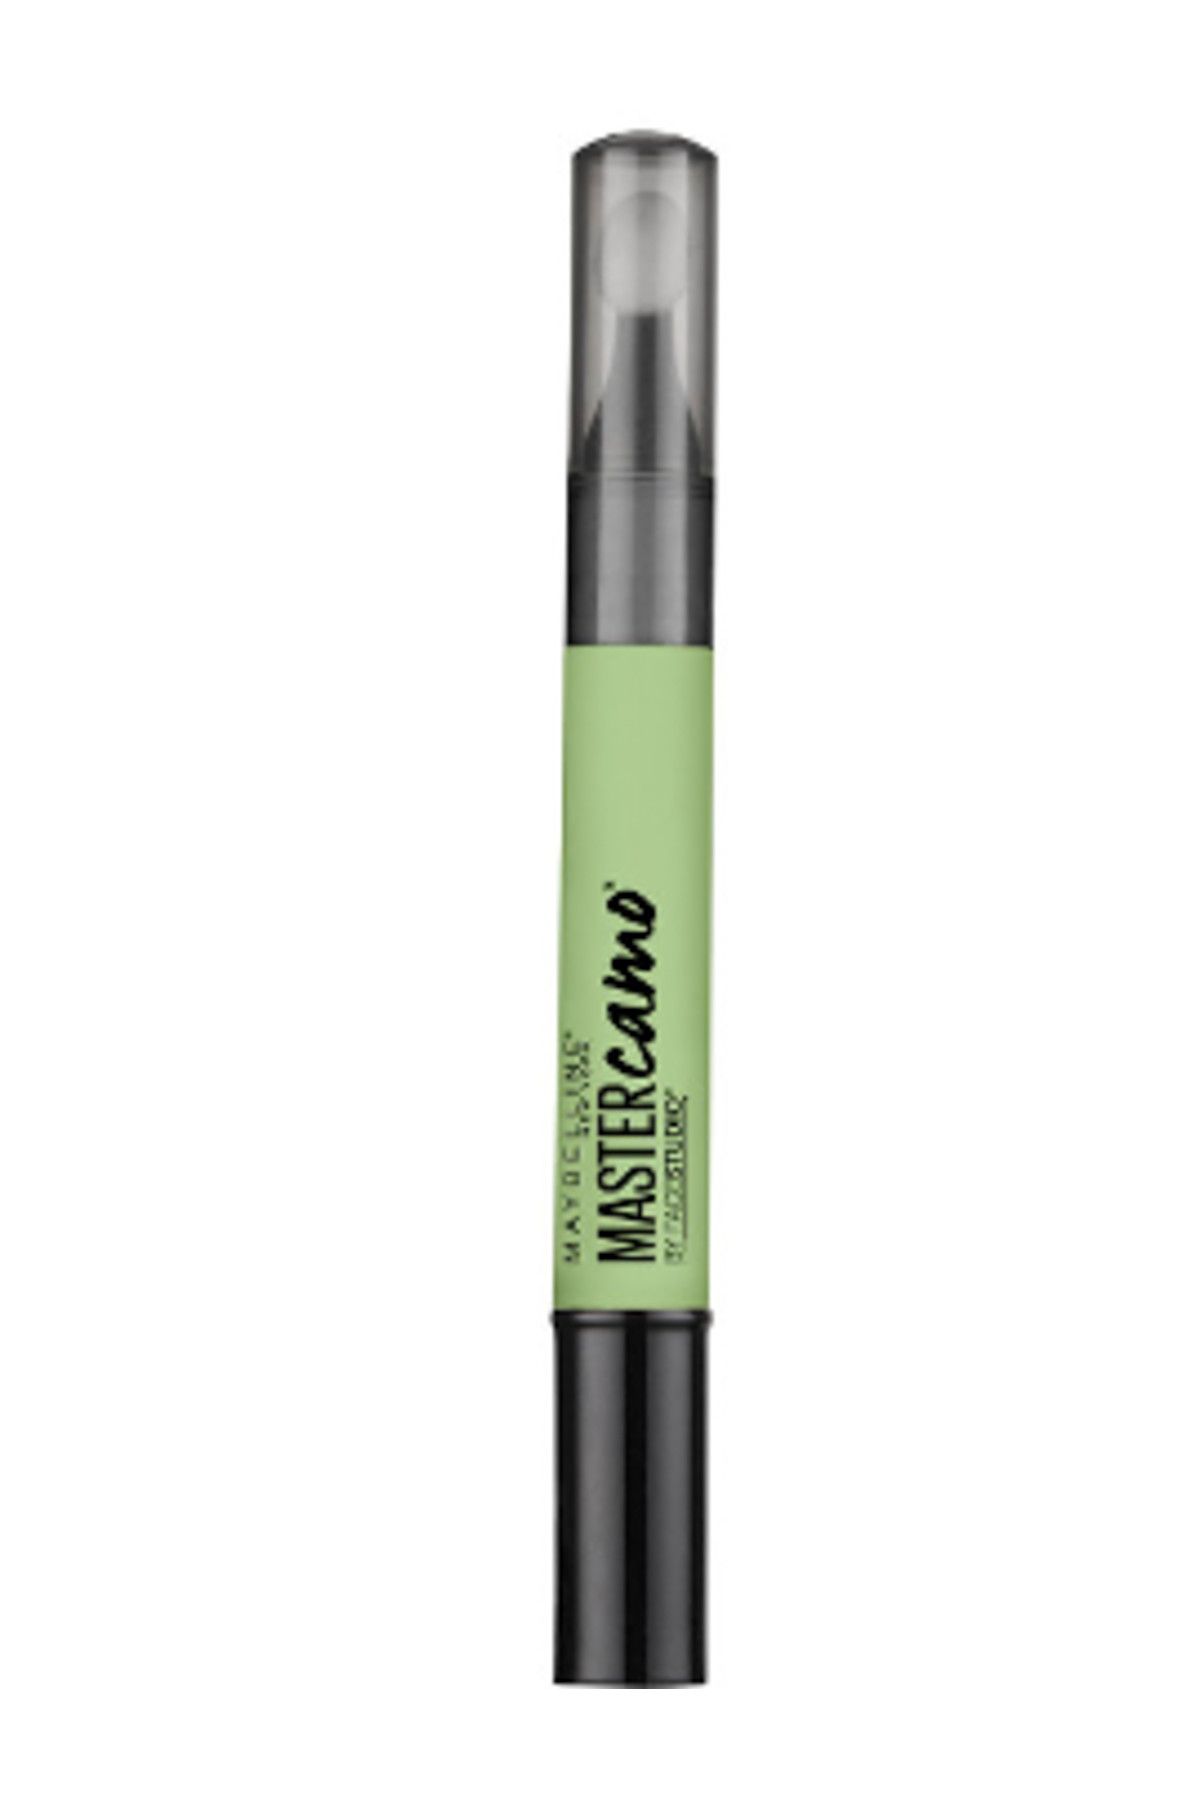 Maybelline New York Kapatıcı - Master Camo Color Correcting Pen 10 Green 3600531412678